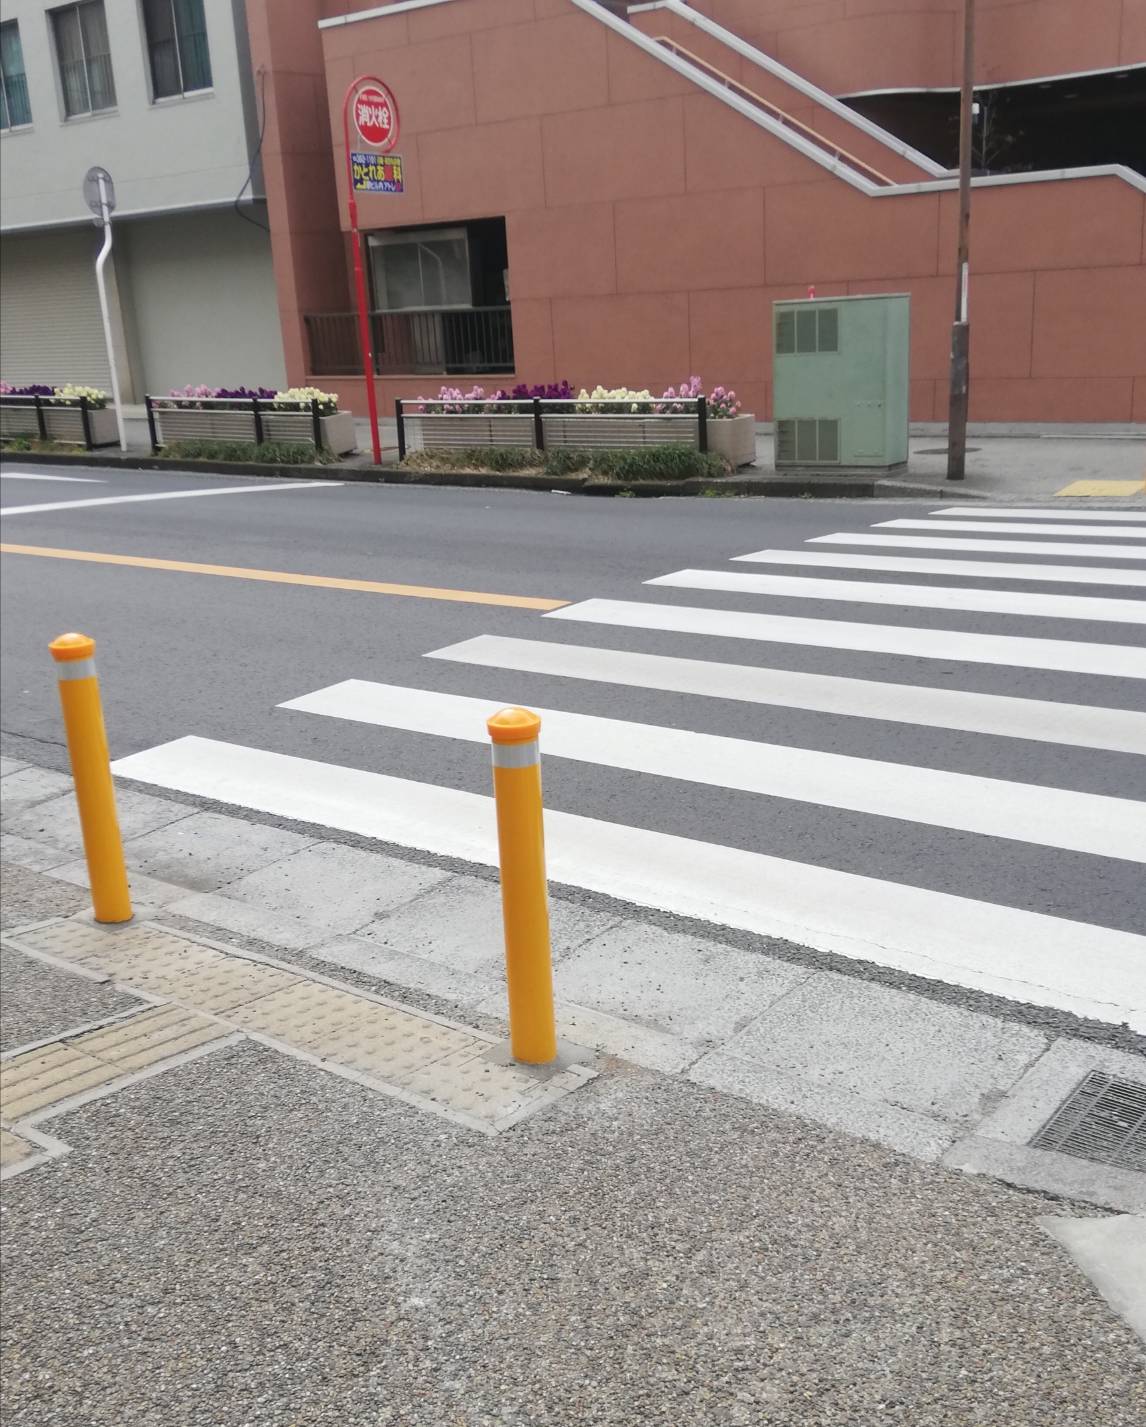 松戸市民劇場の接する交差点で歩道を安全にする為の工事実施 現地状況 黄色いポールやガードレール設置も進む 松戸ロード 松戸の地域情報